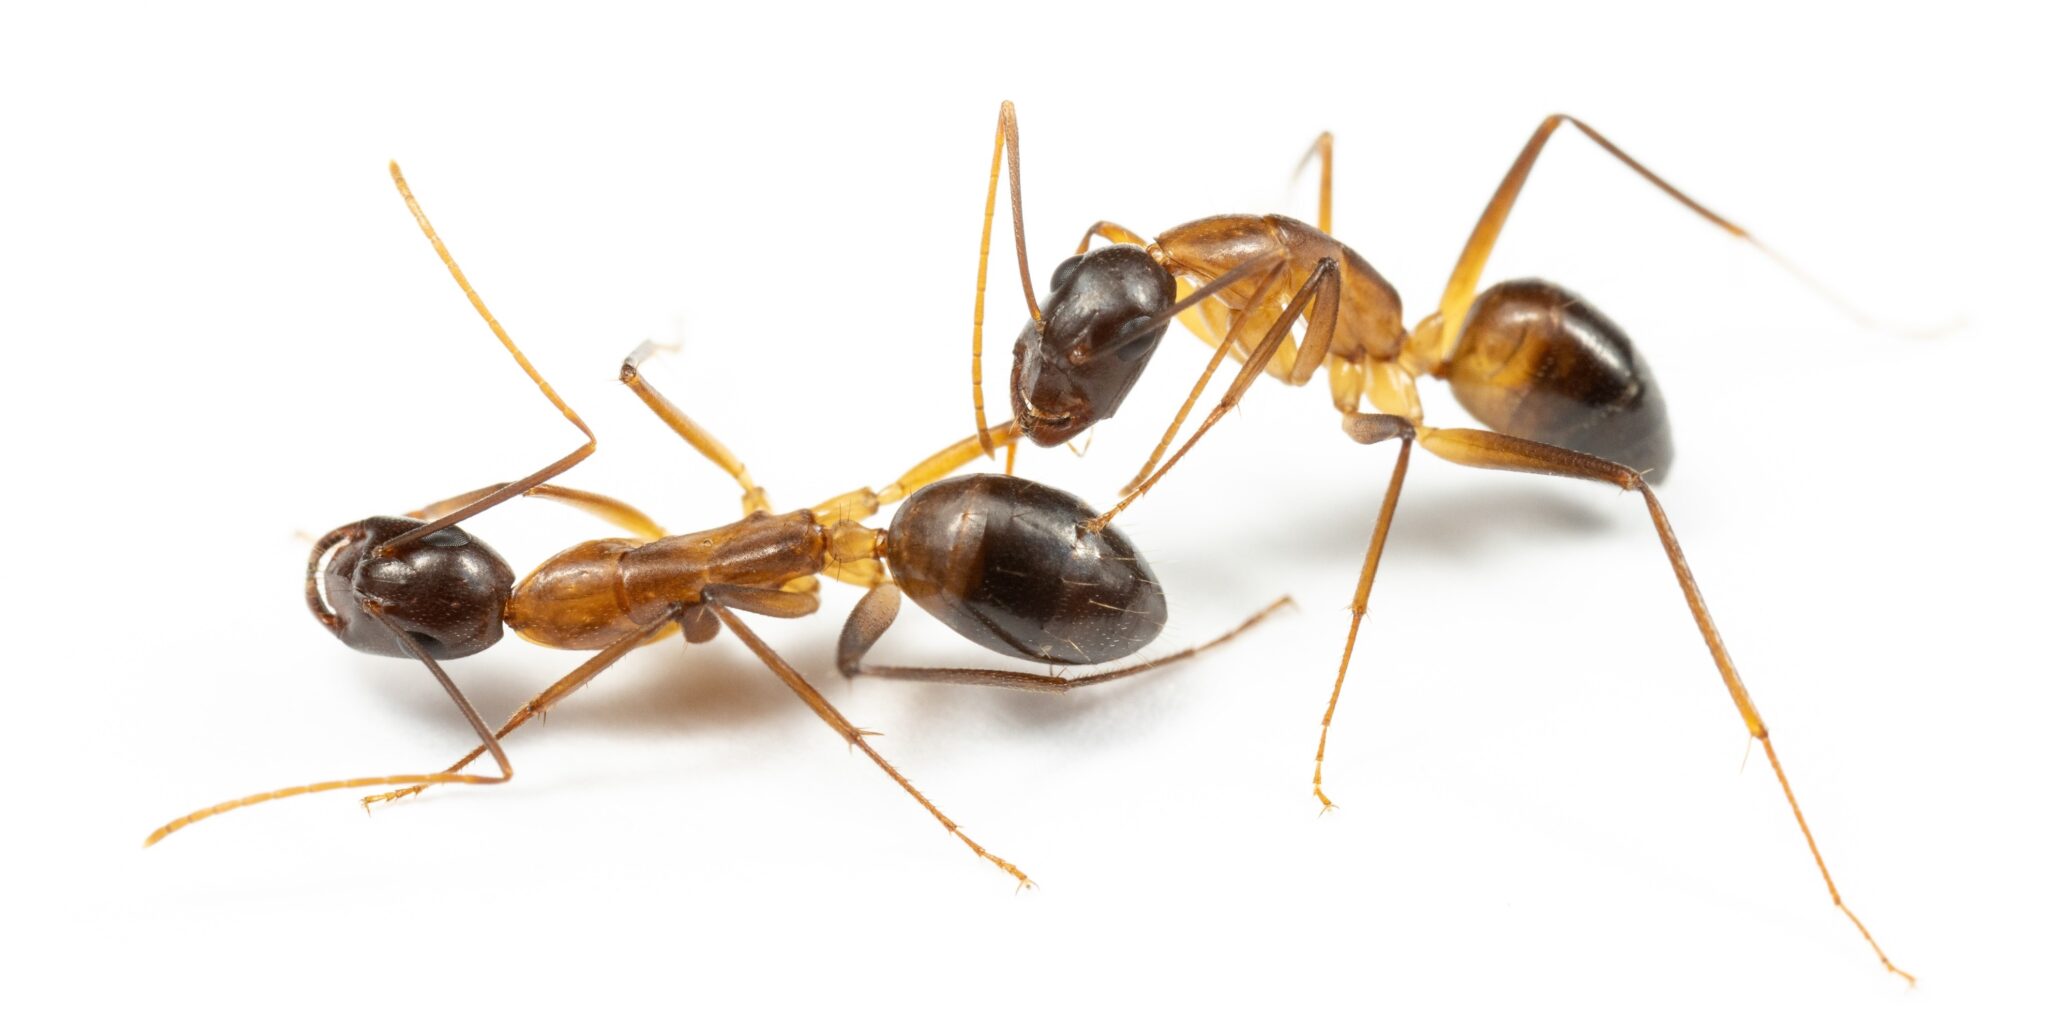 Ameisen retten verletzten Artgenossen durch Amputationen das Leben